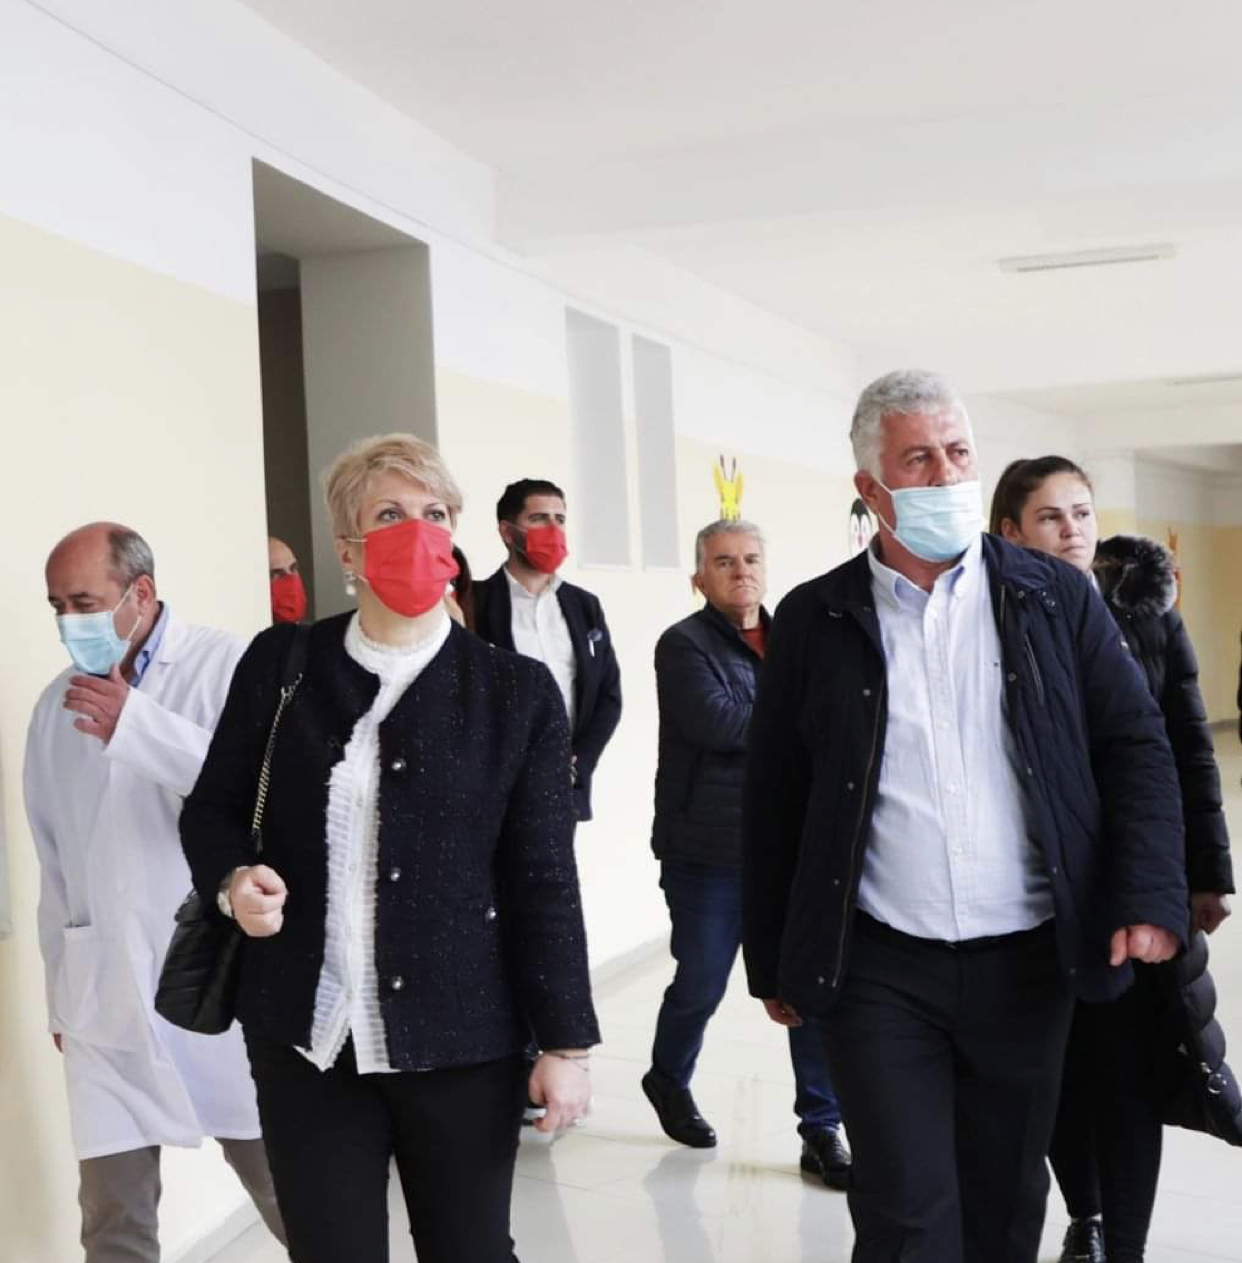 Fondacioni Vodafone Albania dhe Kryqi i Kuq ofrojnë krevatë të specializuar në Spitalin Pediatrik të Sarandës